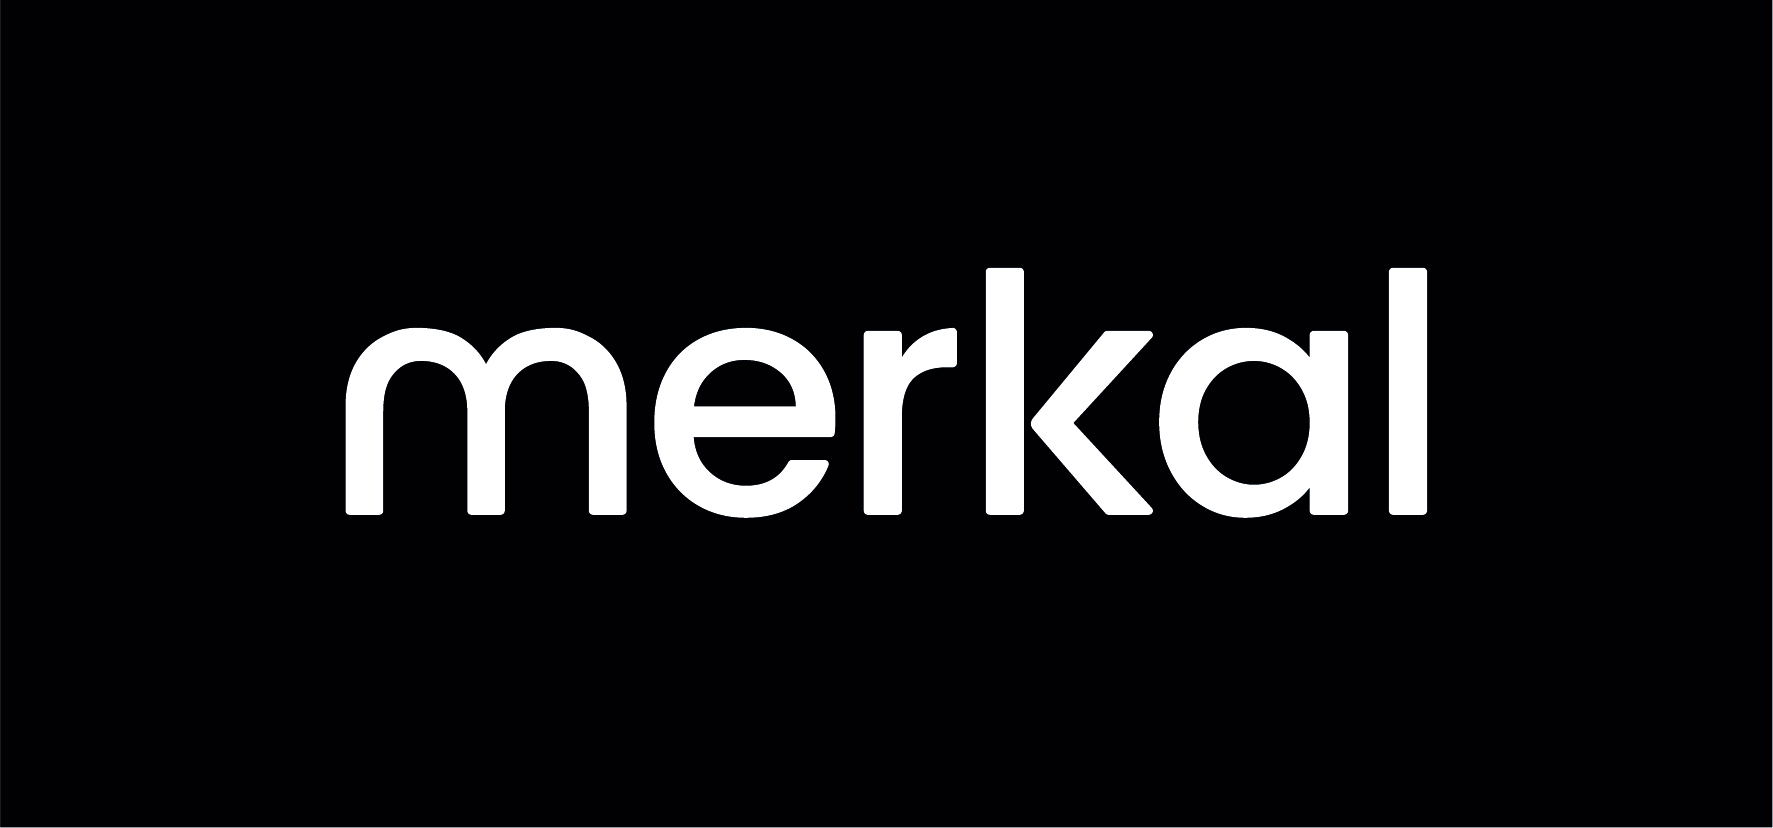 Merkal renuevan sus contratos en el Parque Comercial Vega del Rey